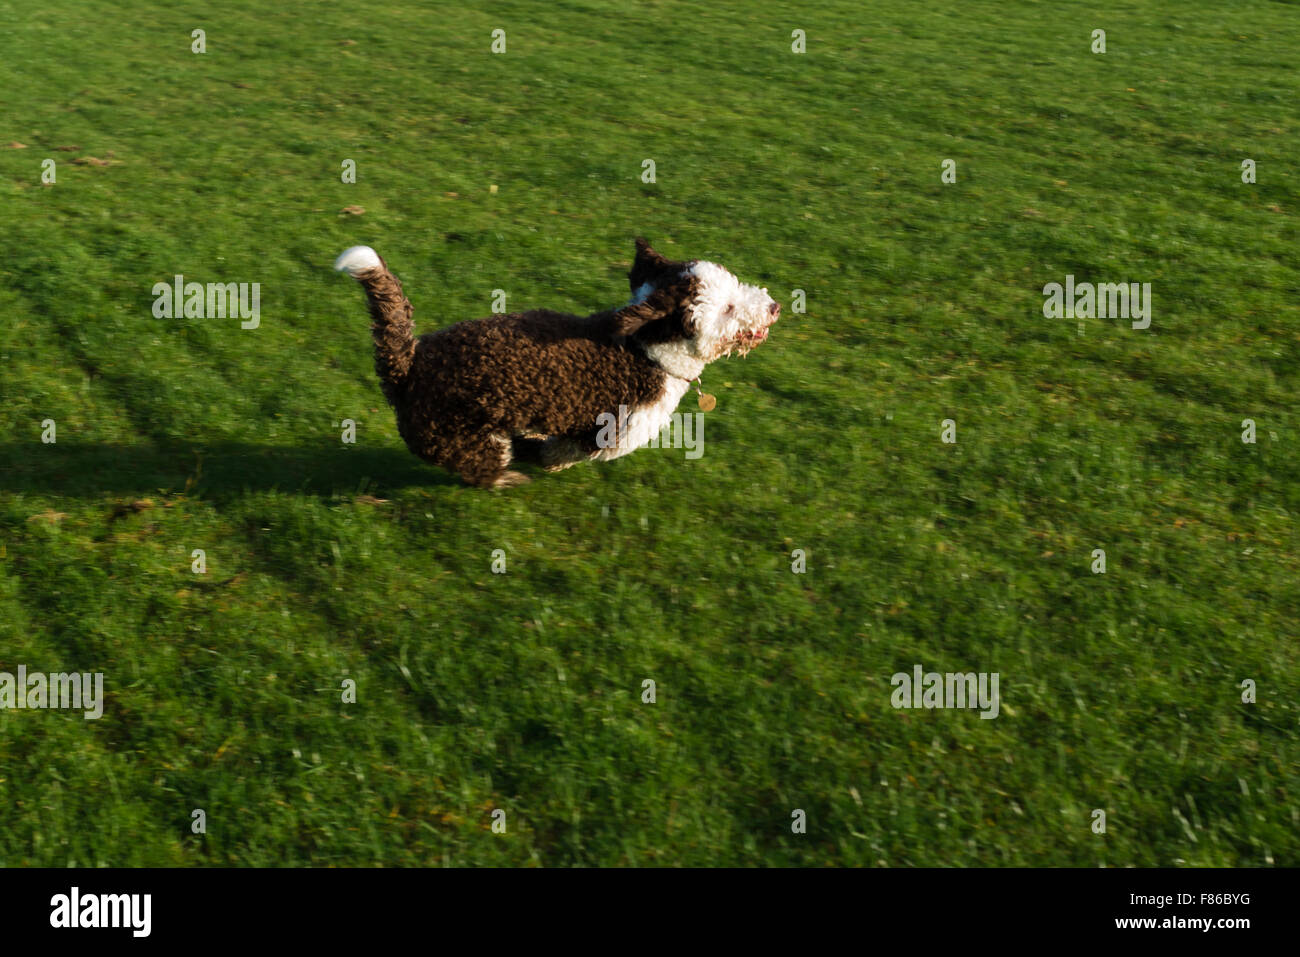 Spanish water dog playing and running Stock Photo